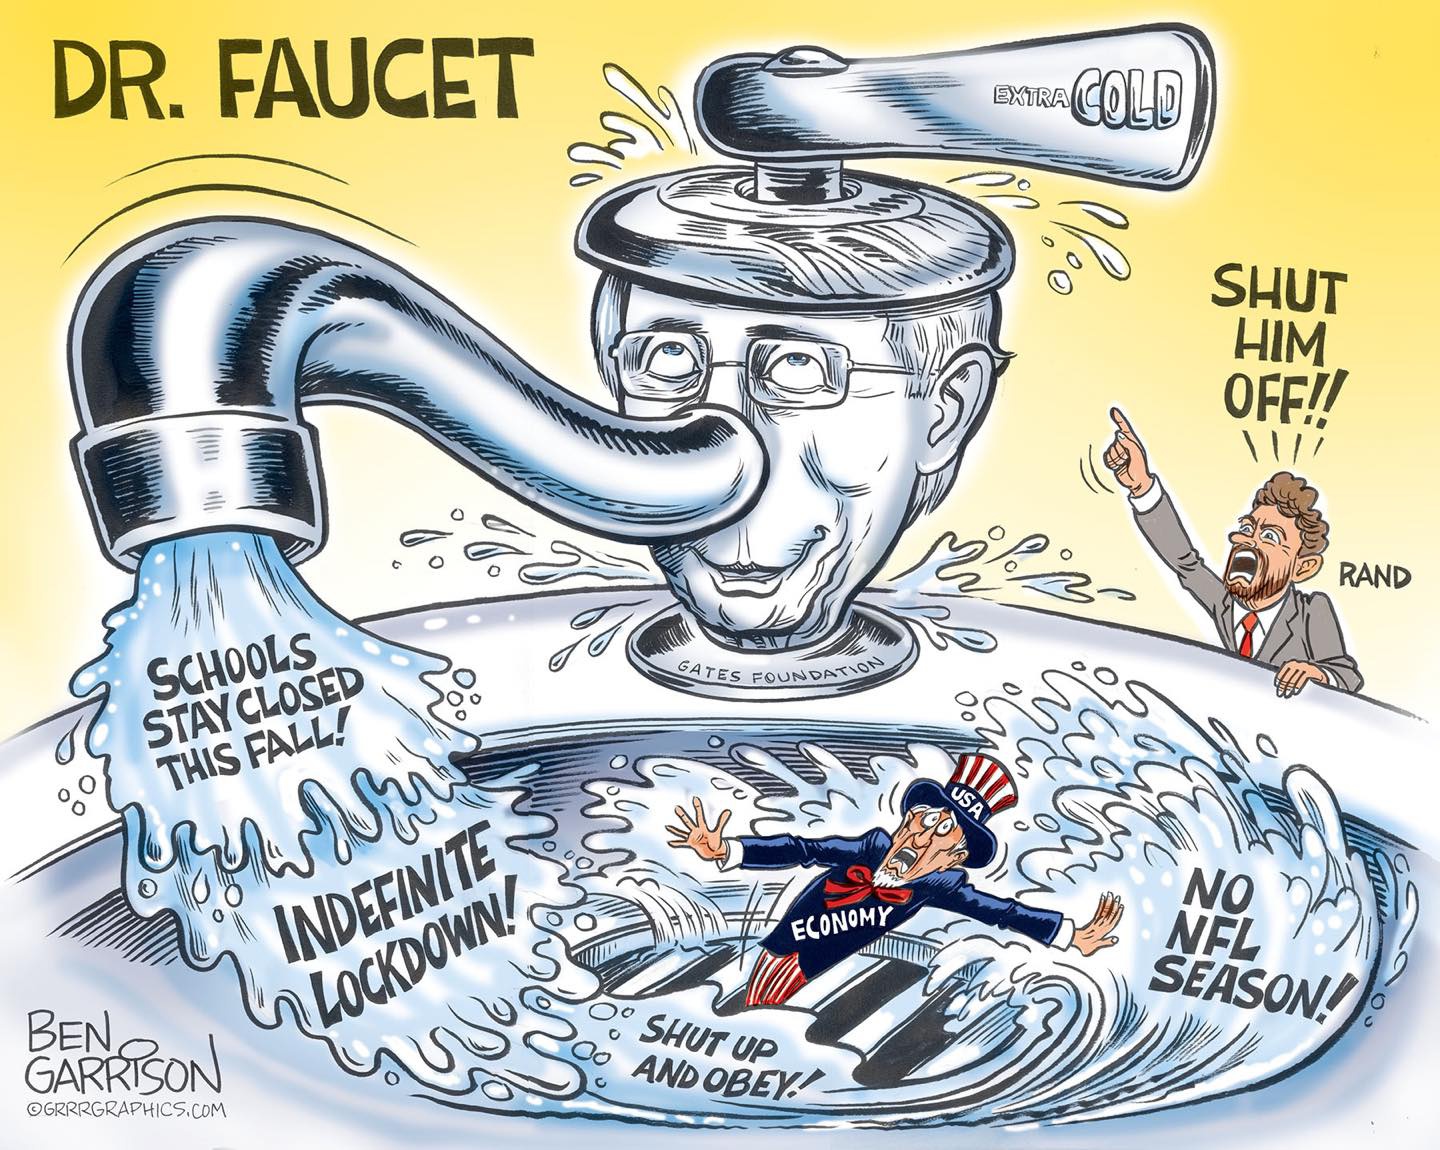 漫画以谐音的方式，将福奇（Fauci）称为“水龙头”（Faucet），暗示他频频在媒体上放话，发表与白宫相左的防疫意见